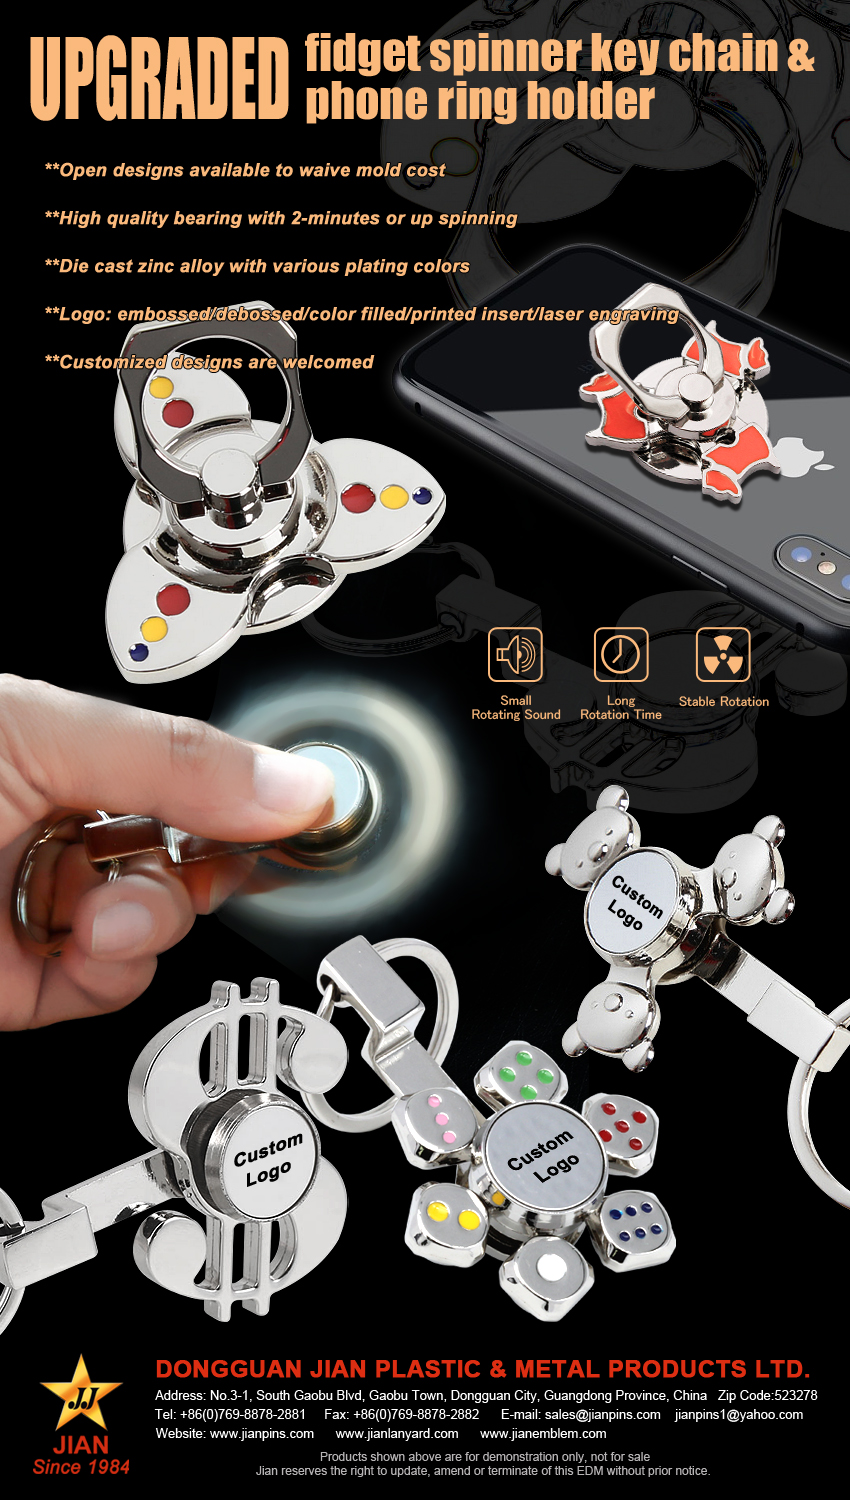 מחזיק מפתחות משודרג Fidget Spinner ומחזיק טבעת טלפון עם שימוש פונקציונלי יותר